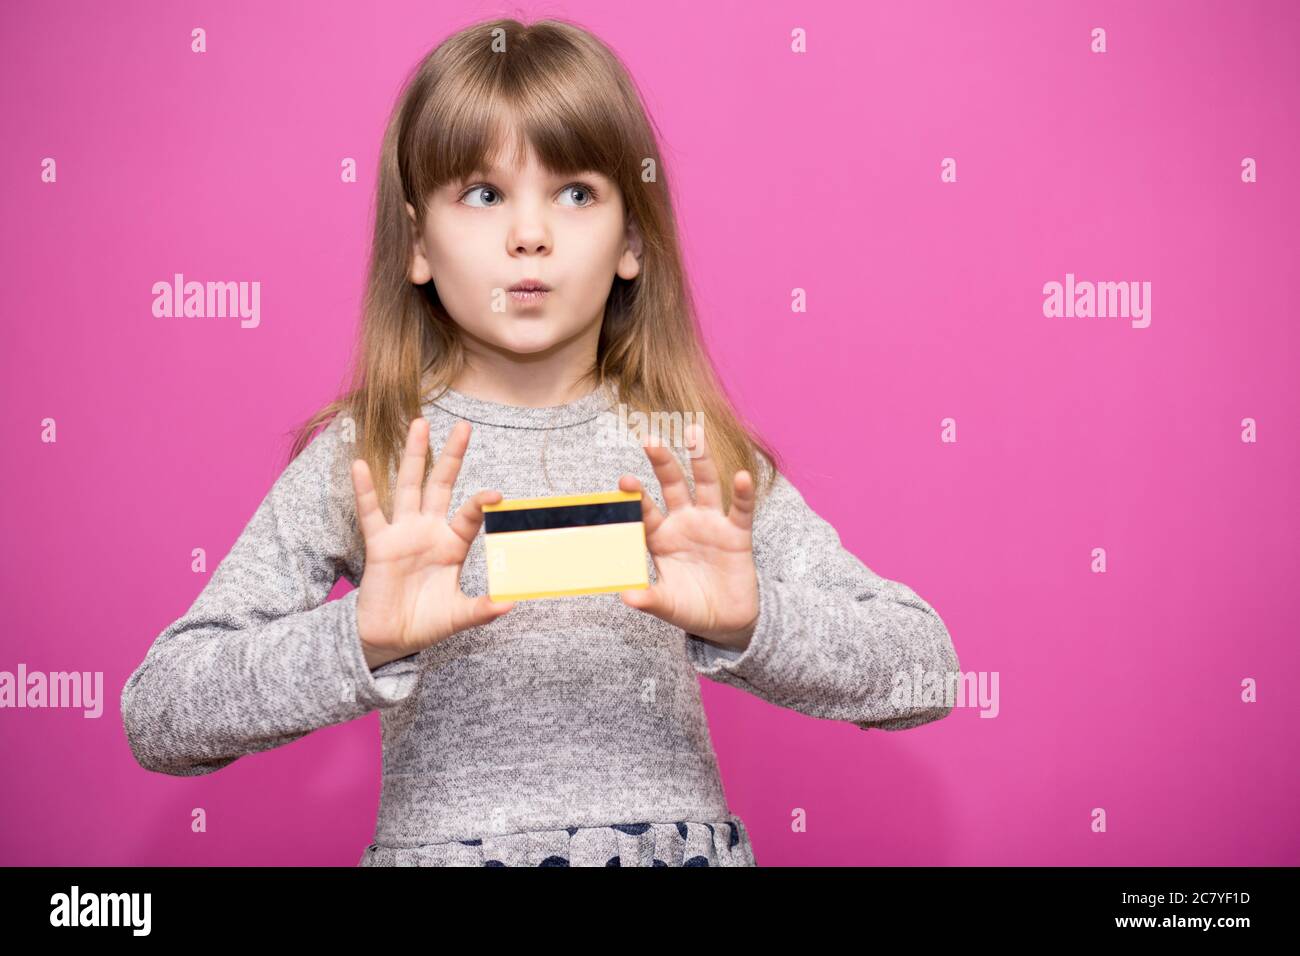 Fröhliche kleine blonde Mädchen 6-7 Jahre alt mit überrascht Gesicht halten Kreditkarte auf rosa isoliert. Lifestyle-Konzept für die Kindheit. Stockfoto